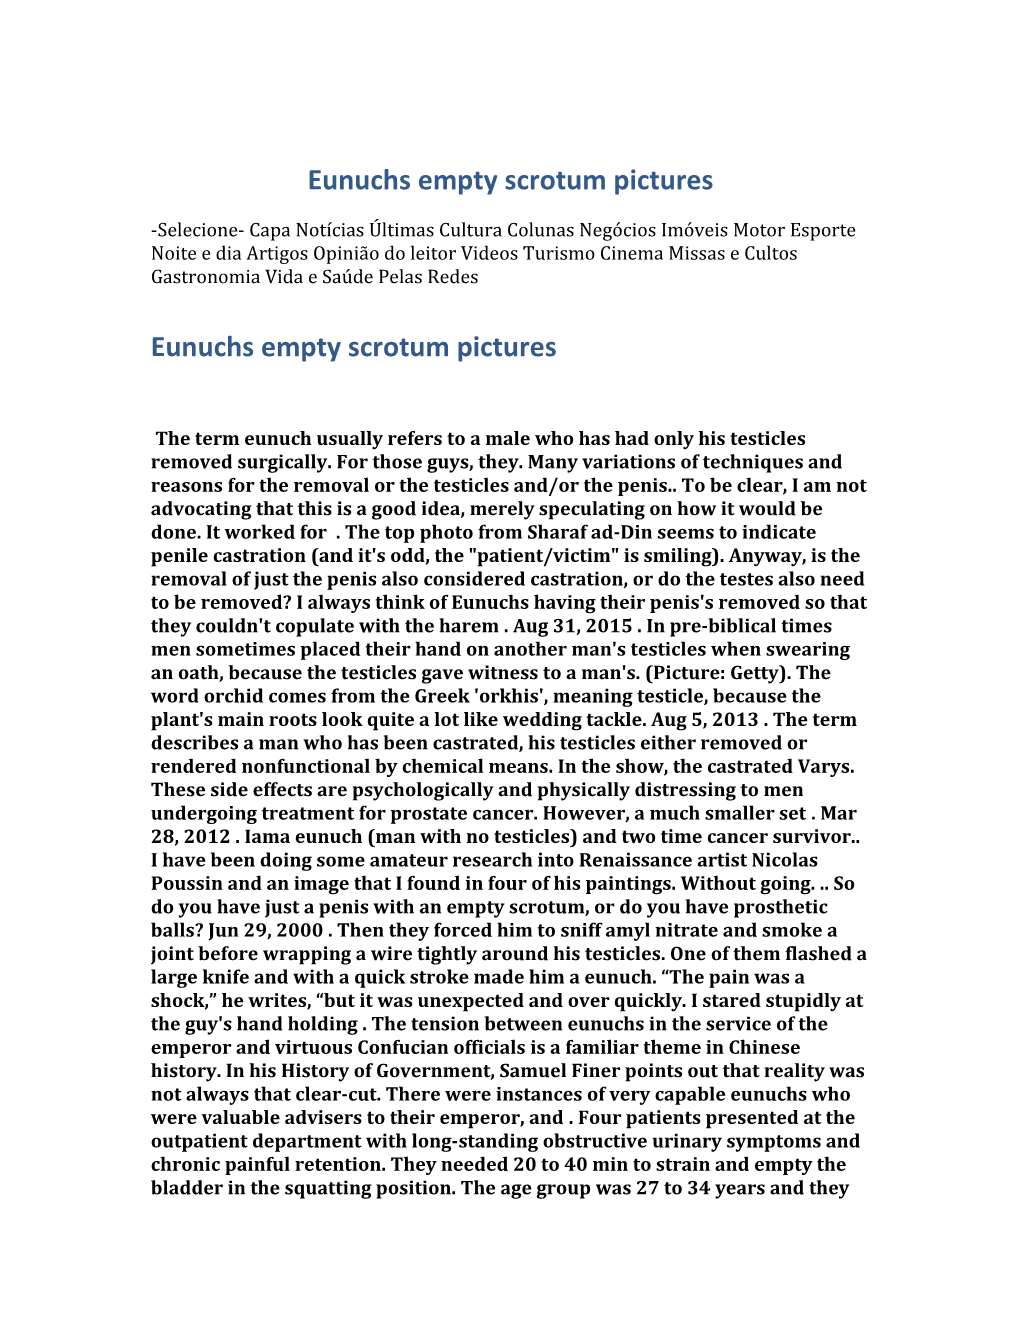 Eunuchs Empty Scrotum Pictures